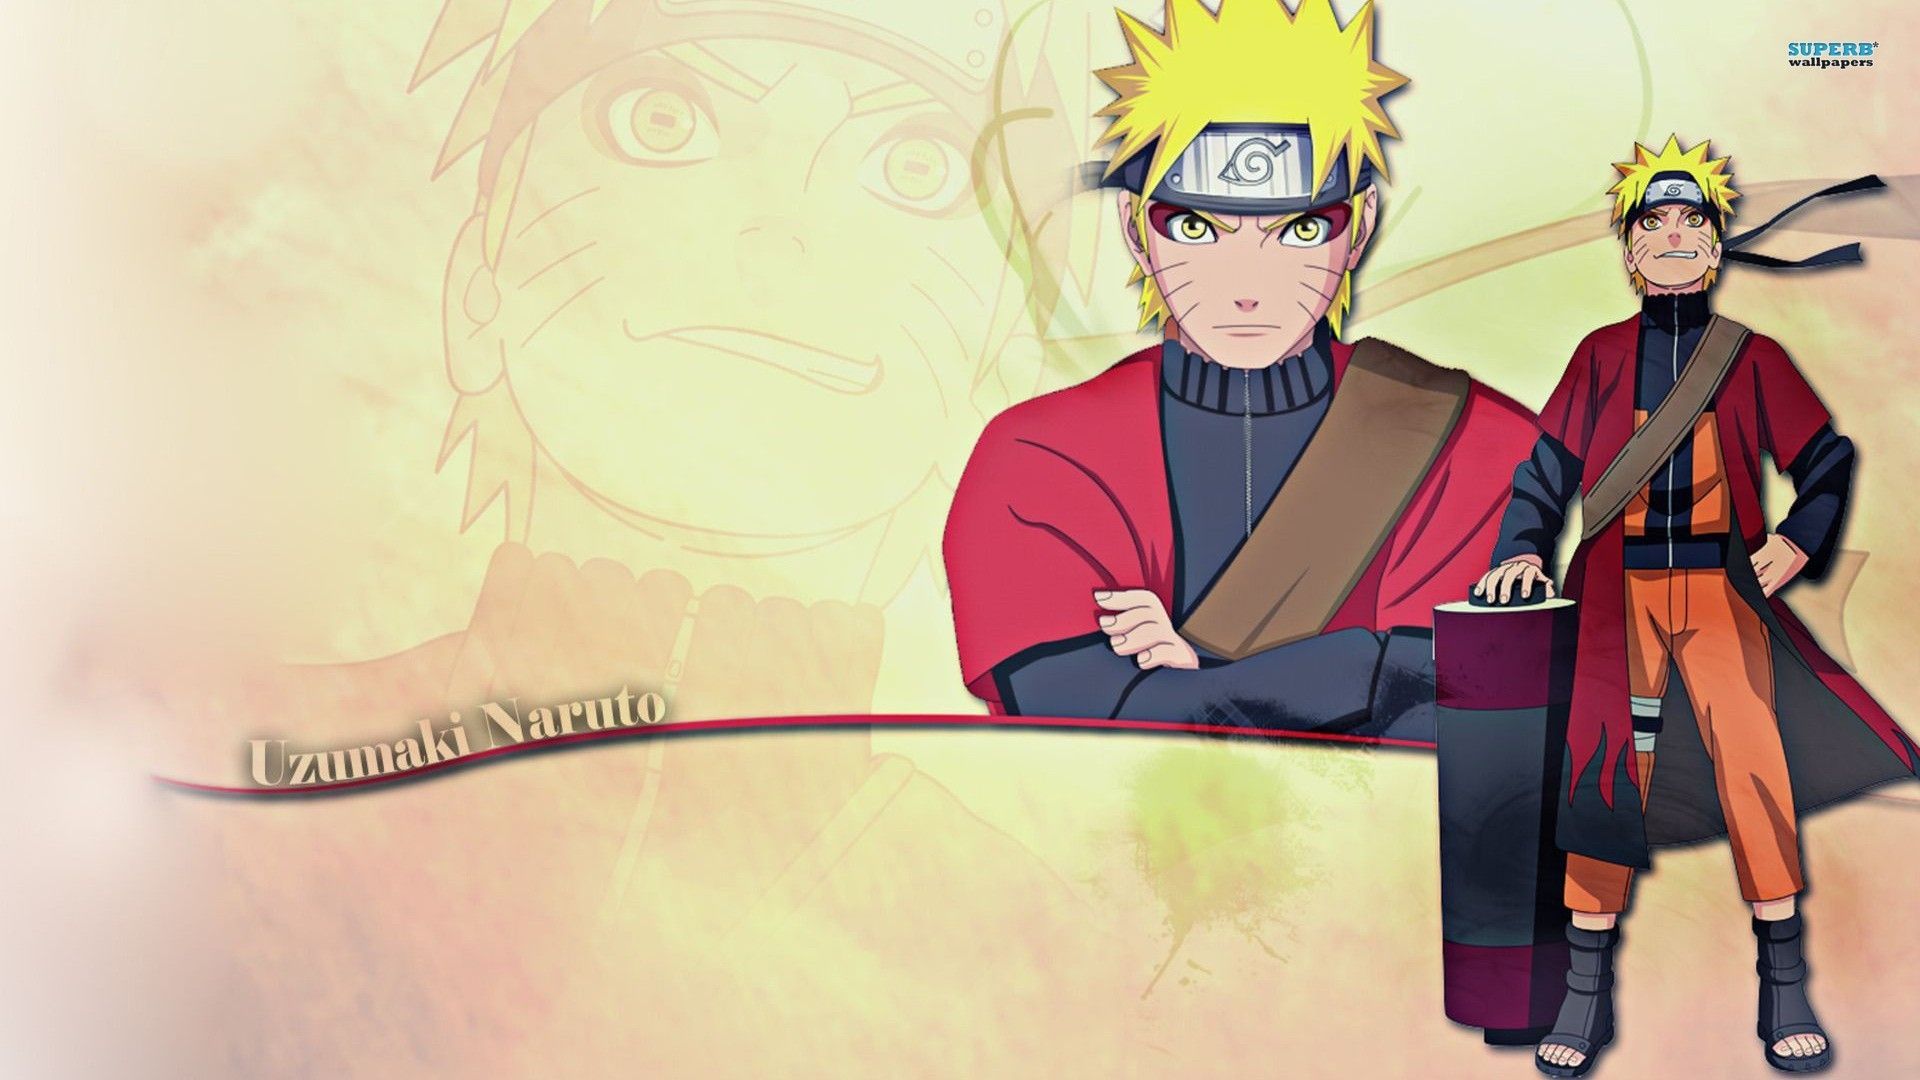 Naruto Uzumaki Sage Mode Wallpaper Widescreen. Naruto wallpaper, Best naruto wallpaper, Naruto uzumaki